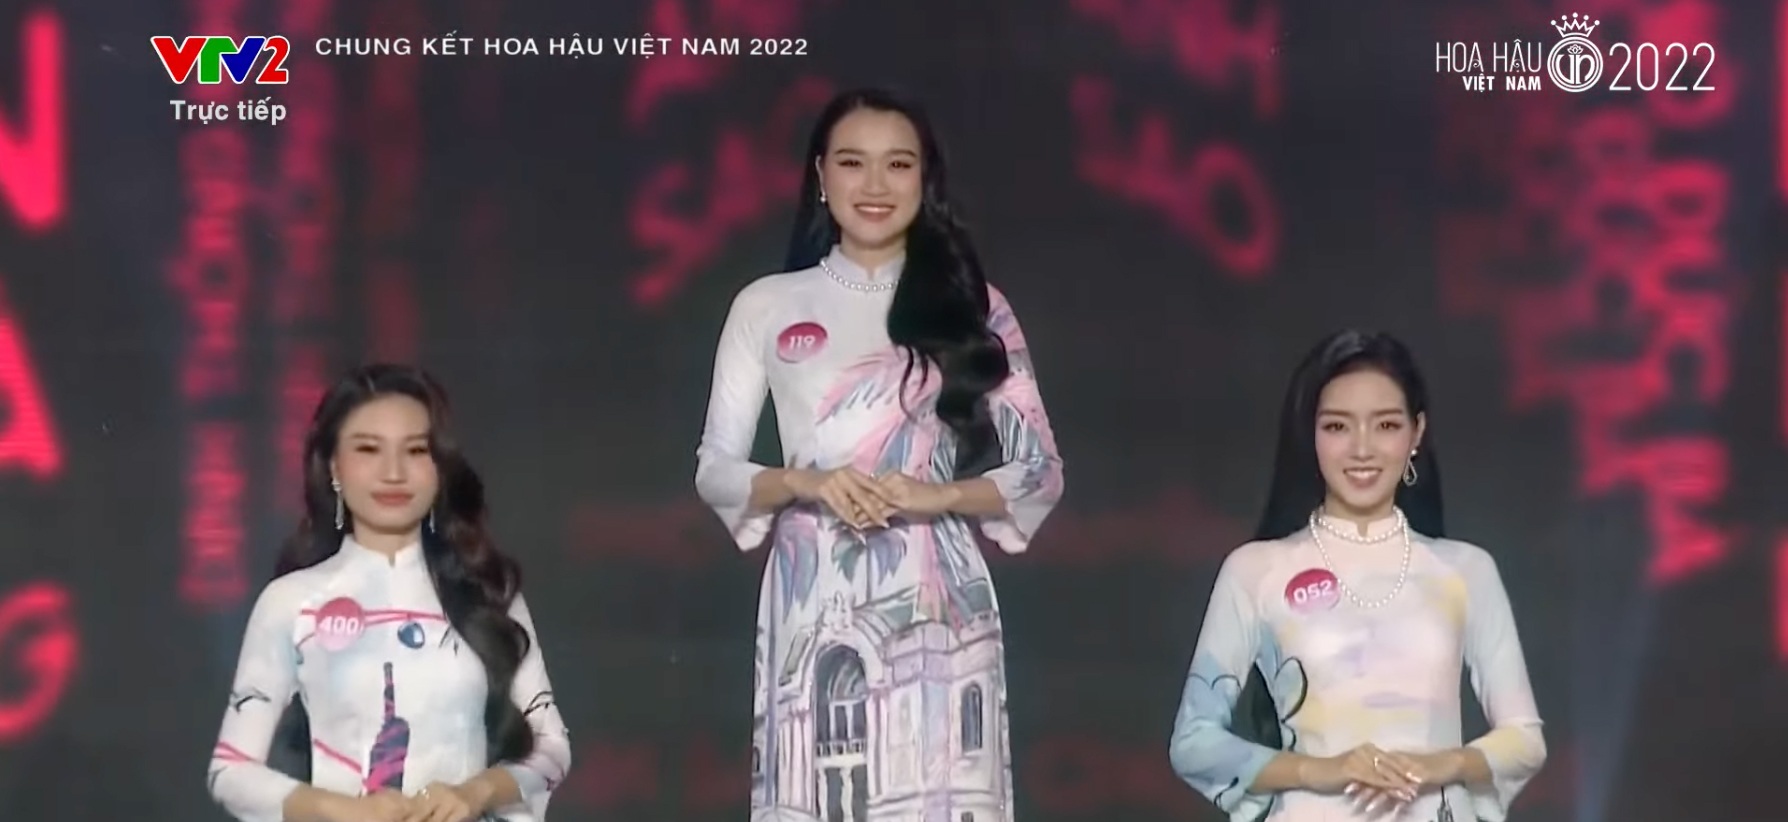 Chung kết Hoa hậu Việt Nam 2022: Tân Hoa hậu chính thức gọi tên Huỳnh Thị Thanh Thuỷ - 42